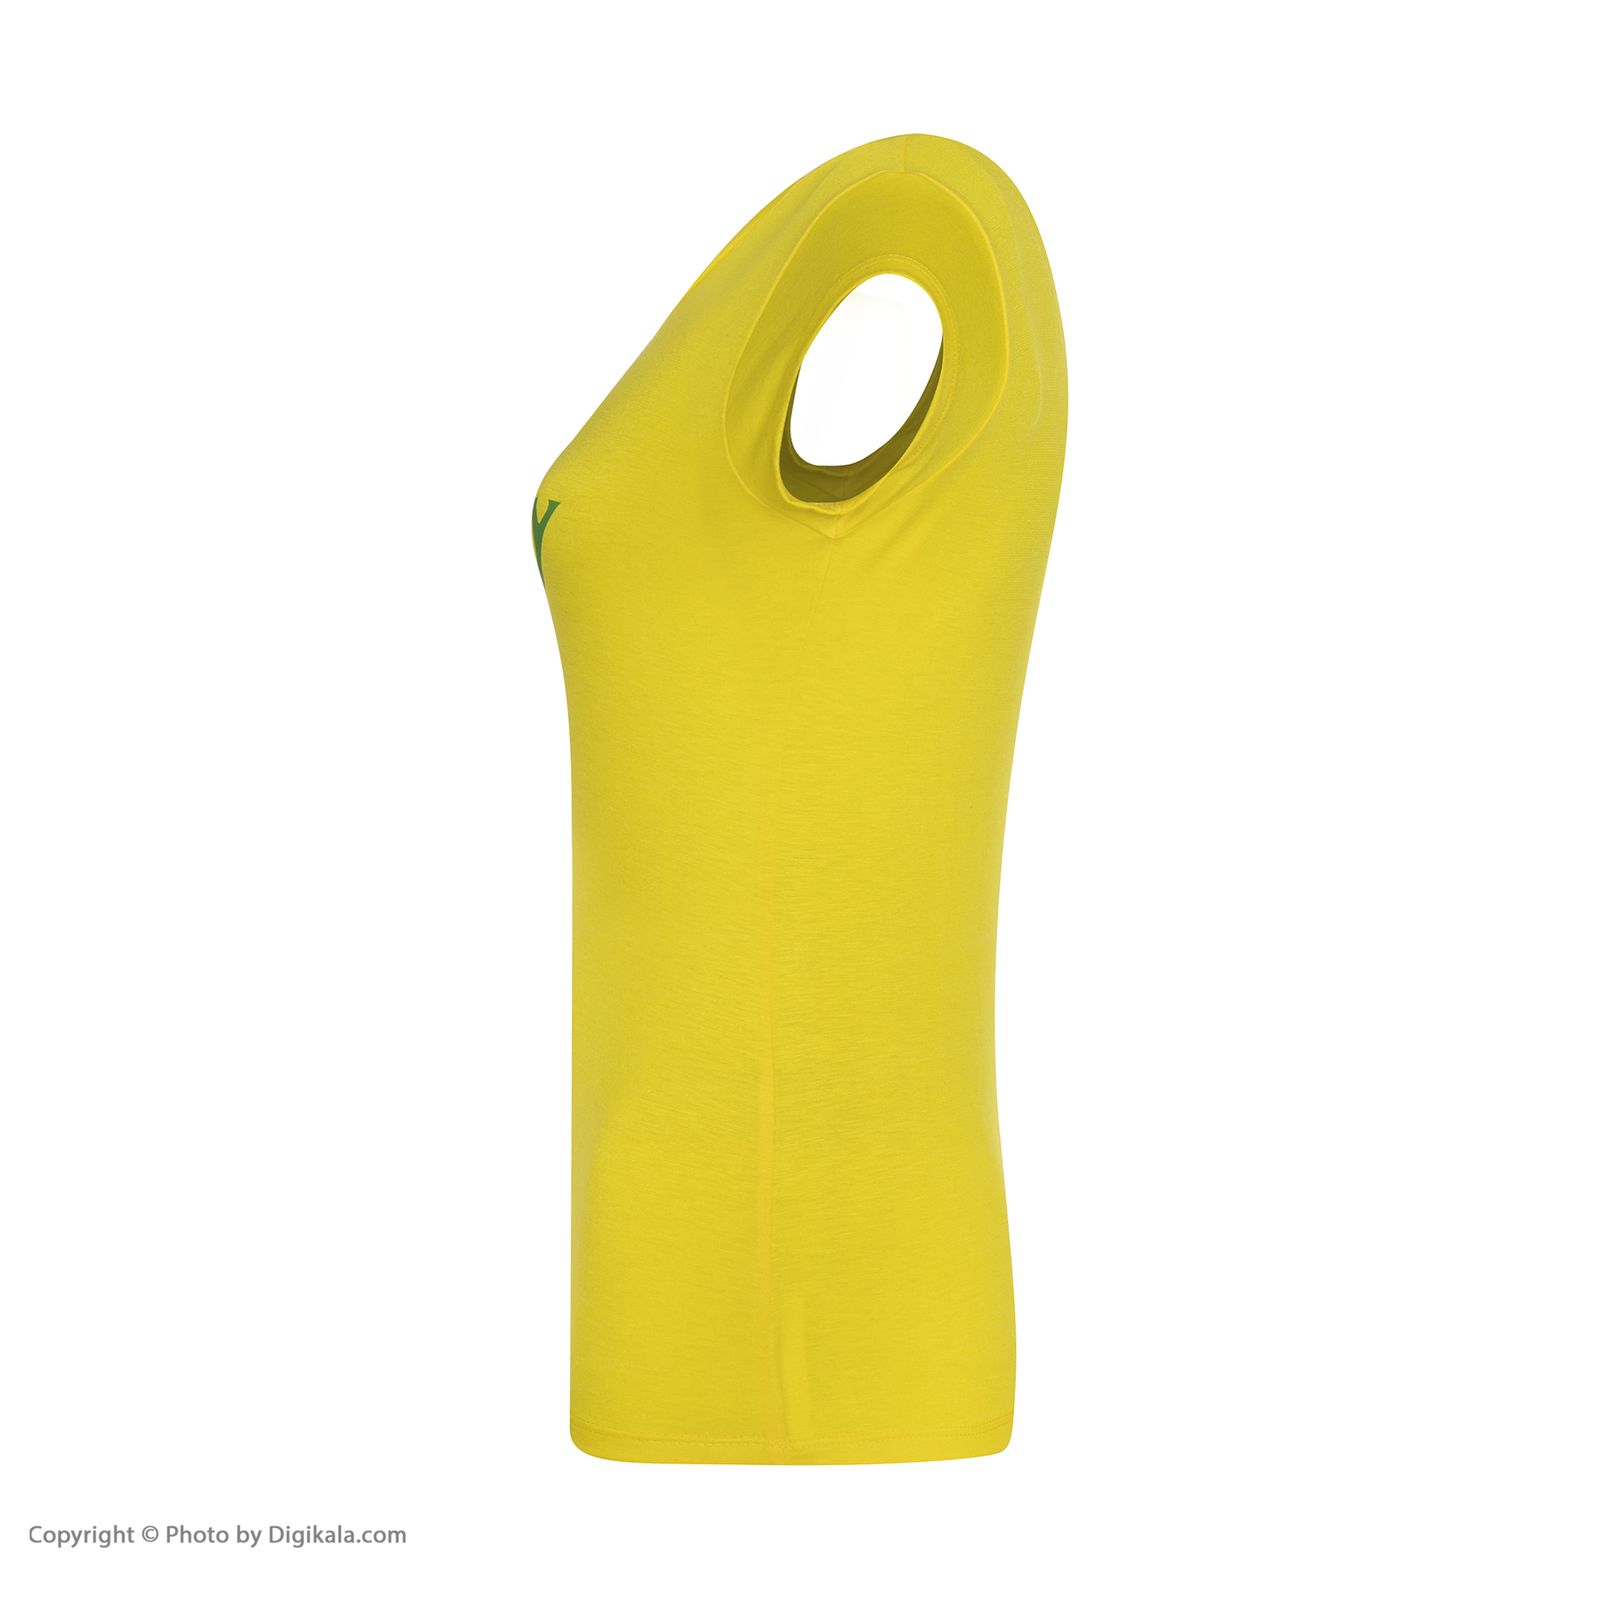 ست تی شرت و شلوارک زنانه افراتین مدل آلبالو کد 6557 رنگ زرد -  - 5